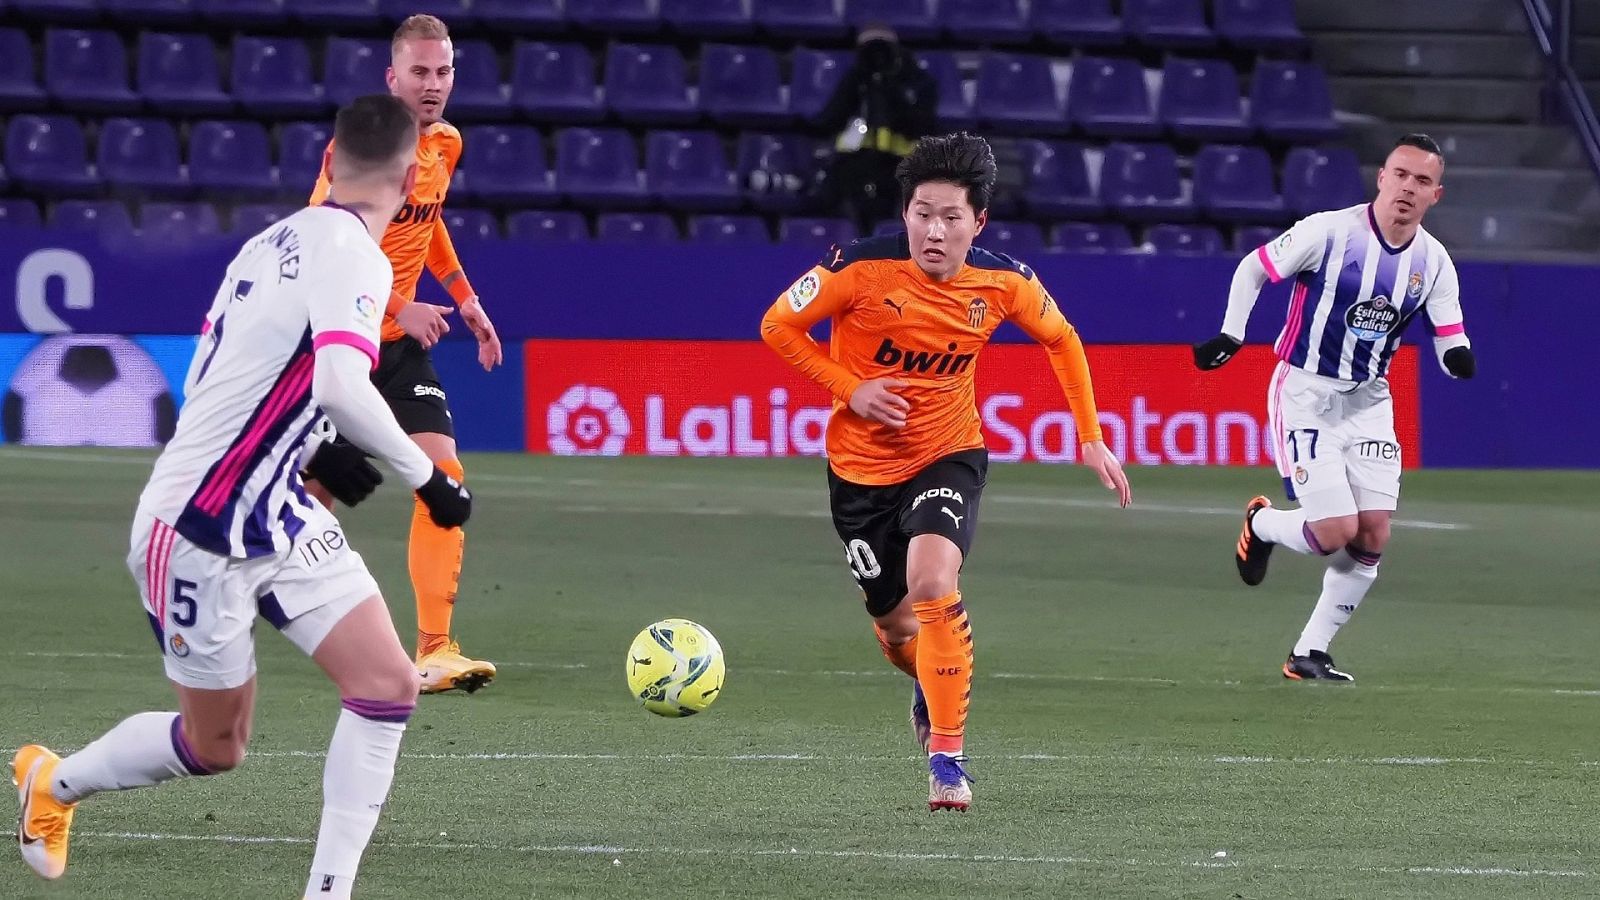 El centrocampista del Valencia Lee Kang-In (c) juega un balón ante Javier Sánchez, del Real Valladolid